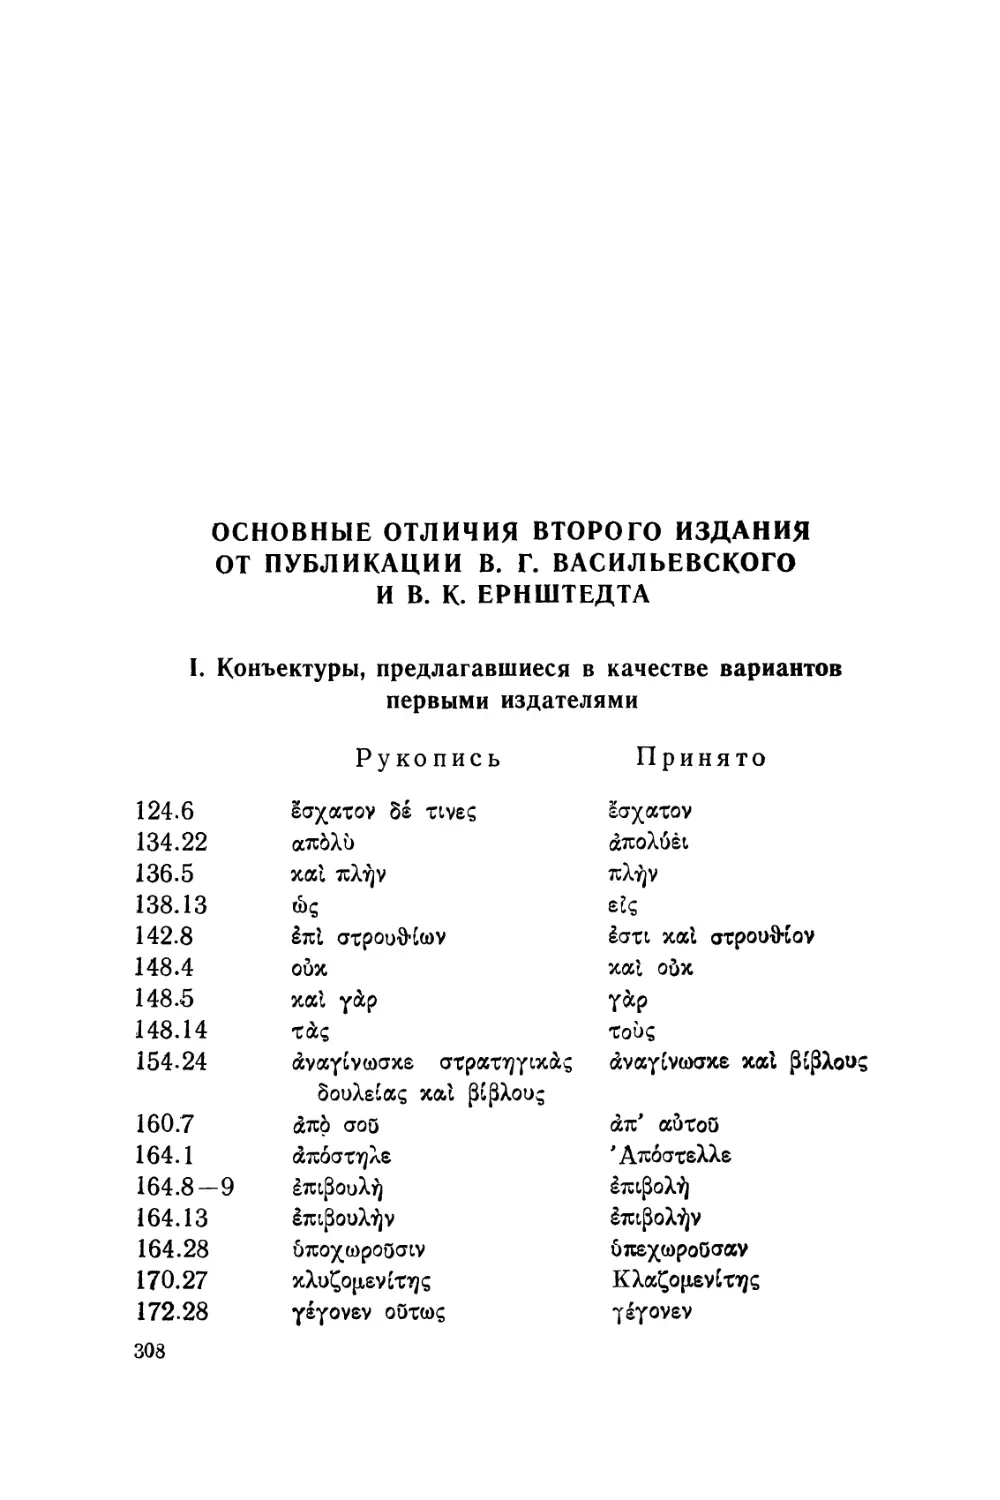 Основные отличия второго издания от публикации В. Г. Васильевского и В.К. Ернштедта